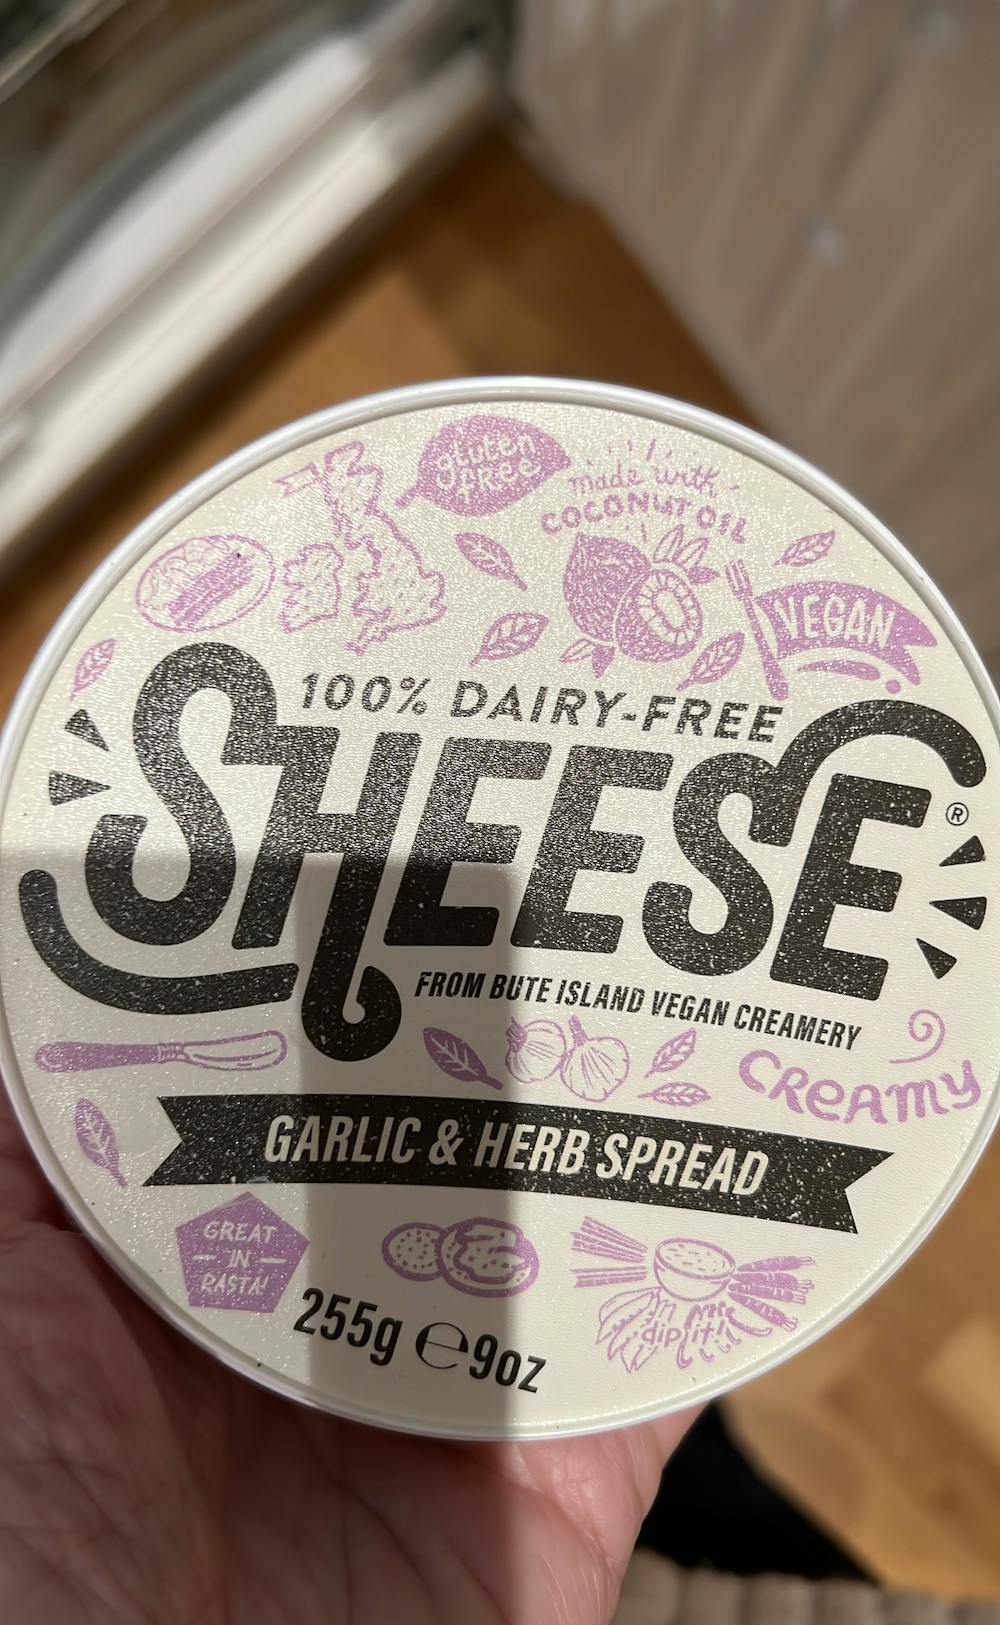 Sheese Garlic & Herb spread, Byte Island Foods